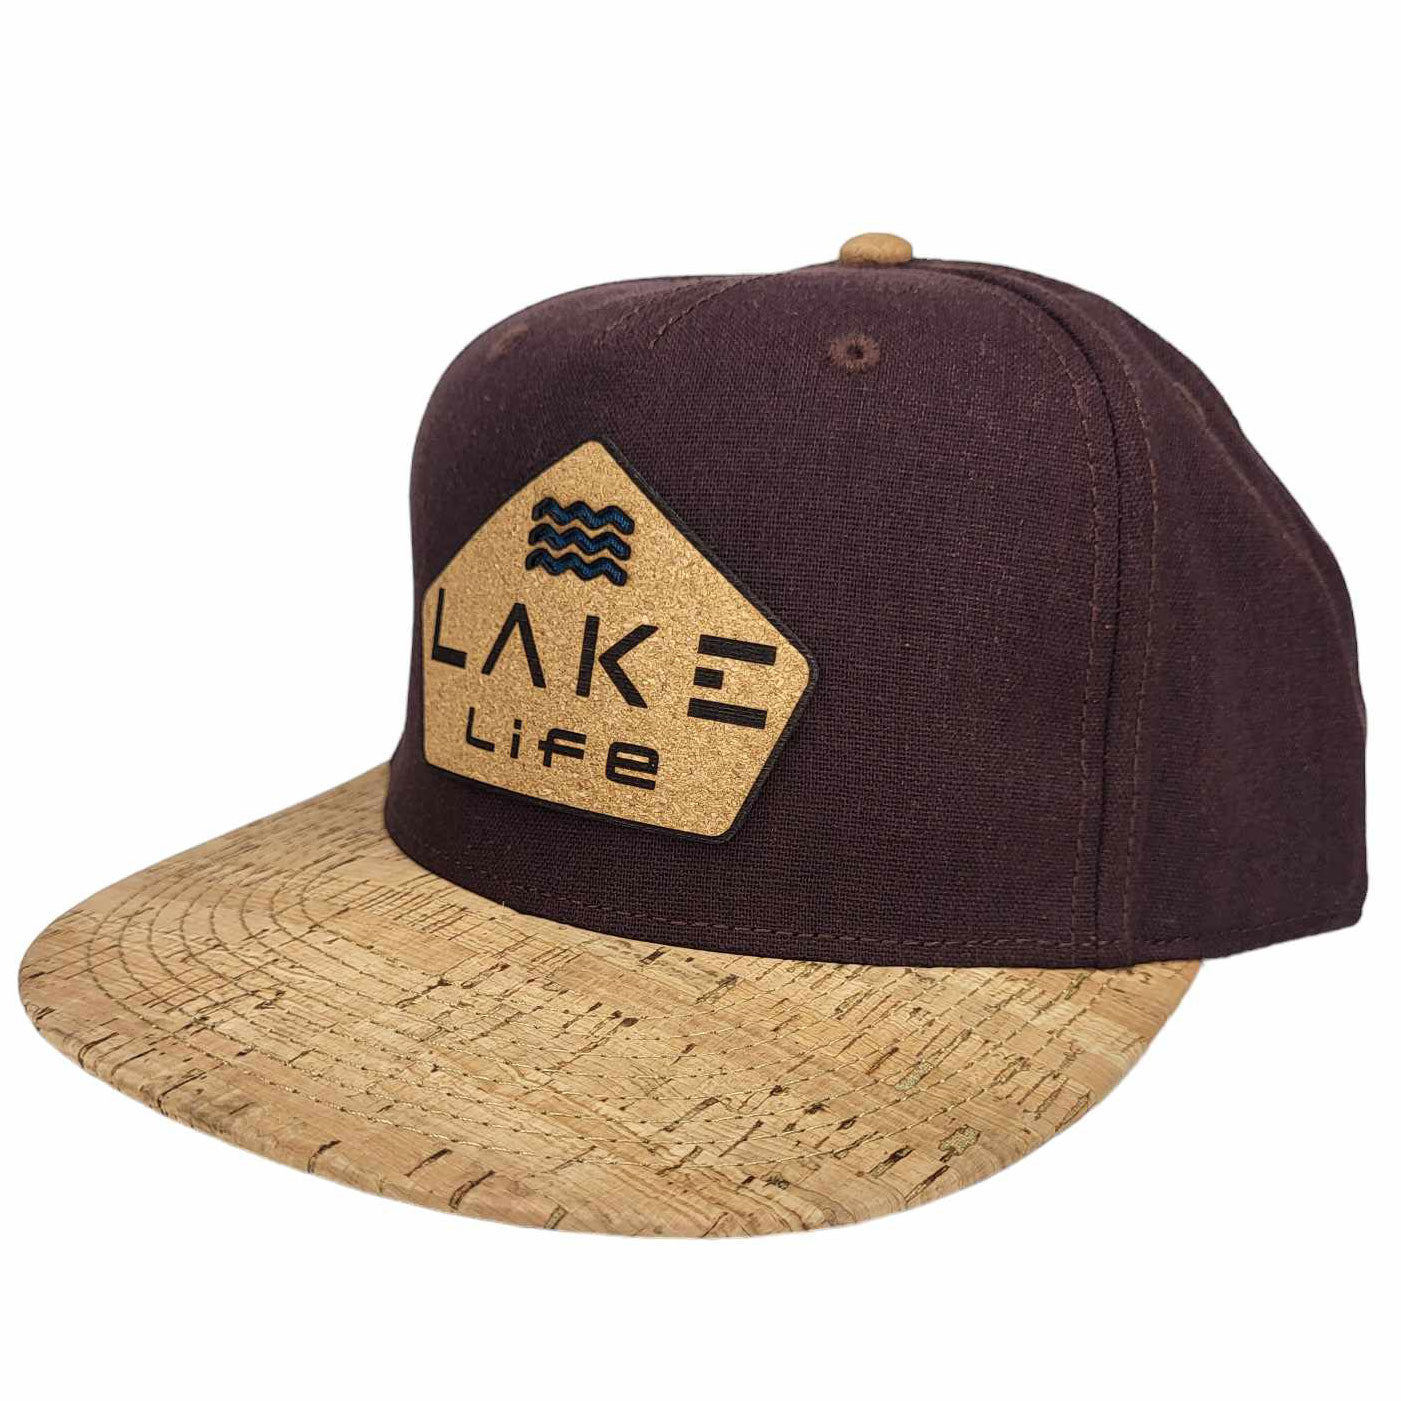 Lake Life Cork Hat